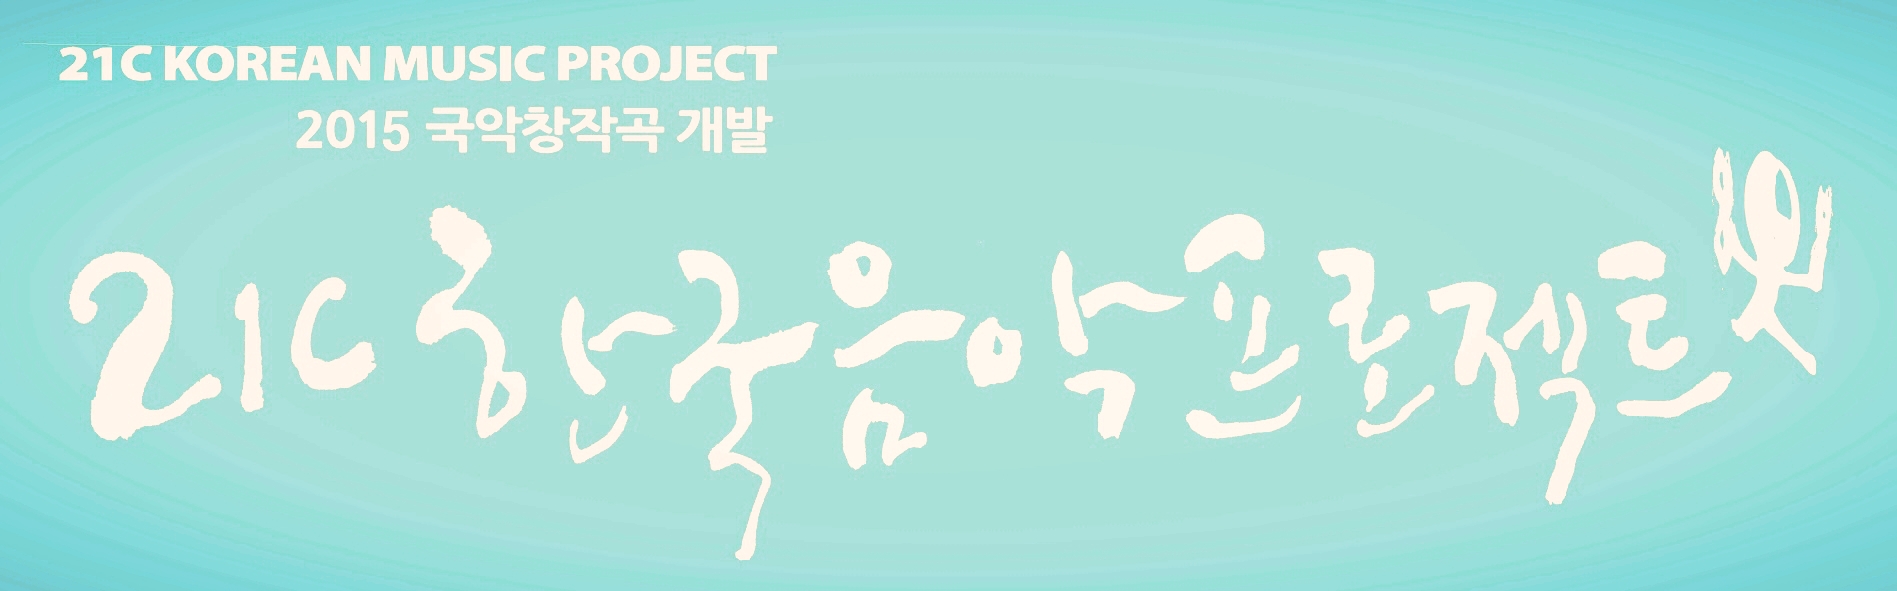 국악창작곡 개발 '21C 한국음악프로젝트'